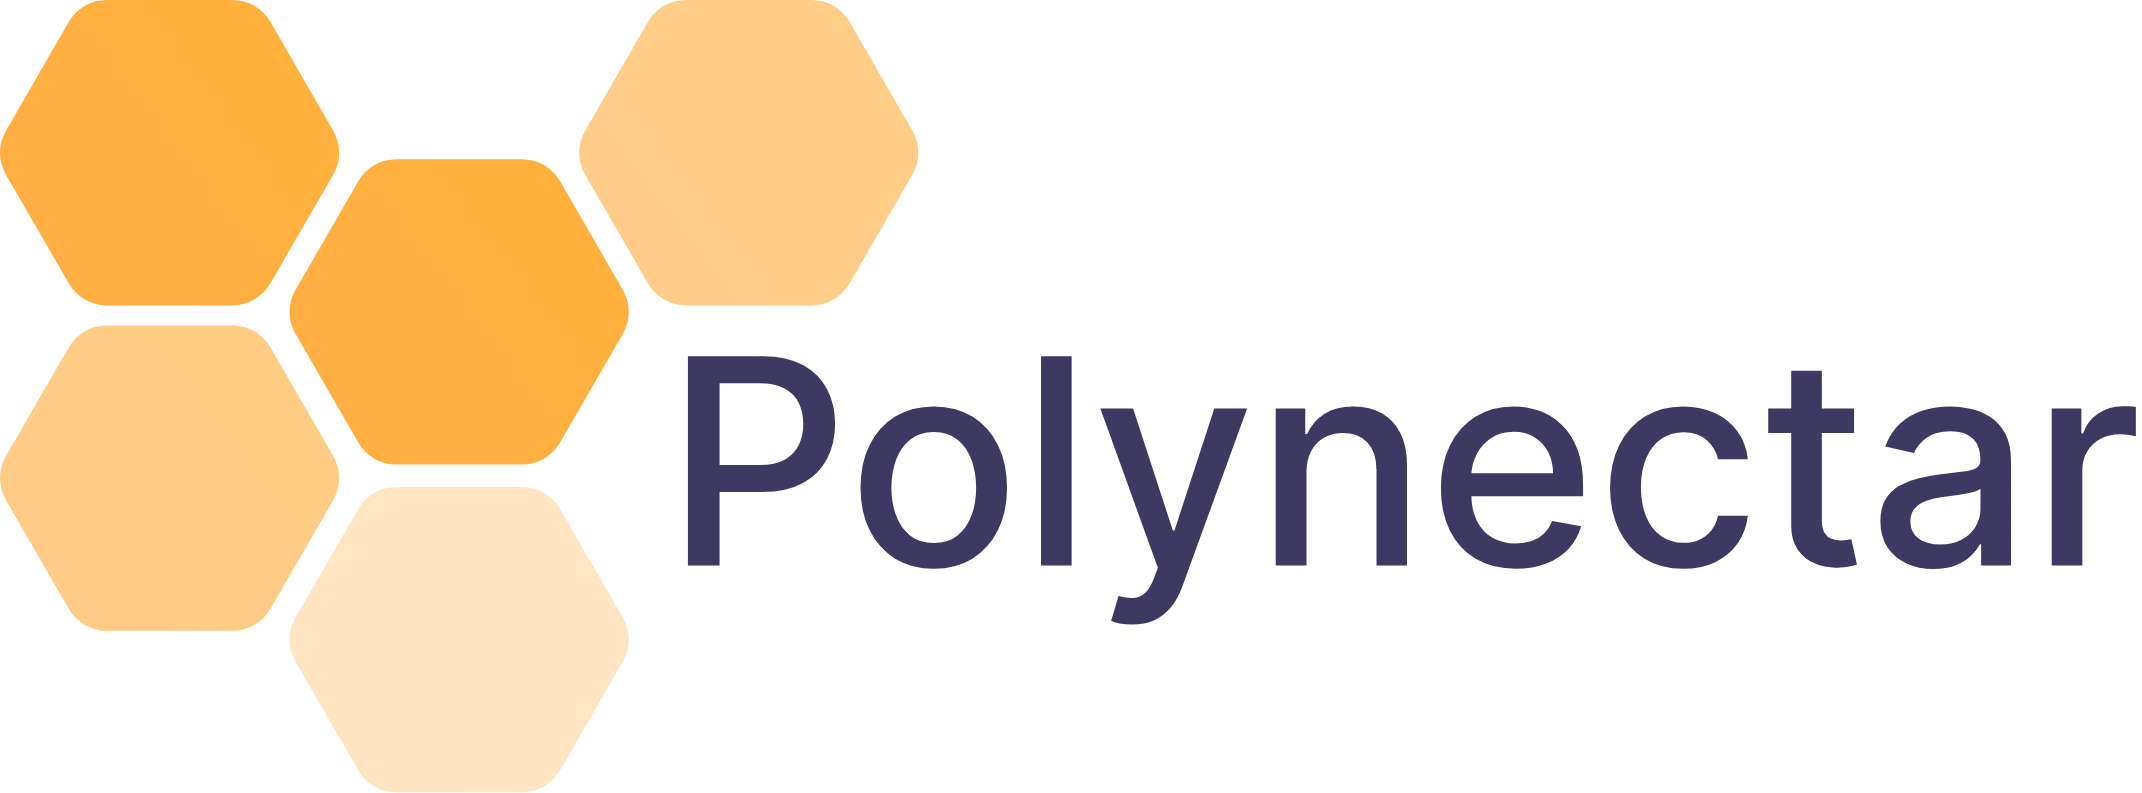 Polynectar